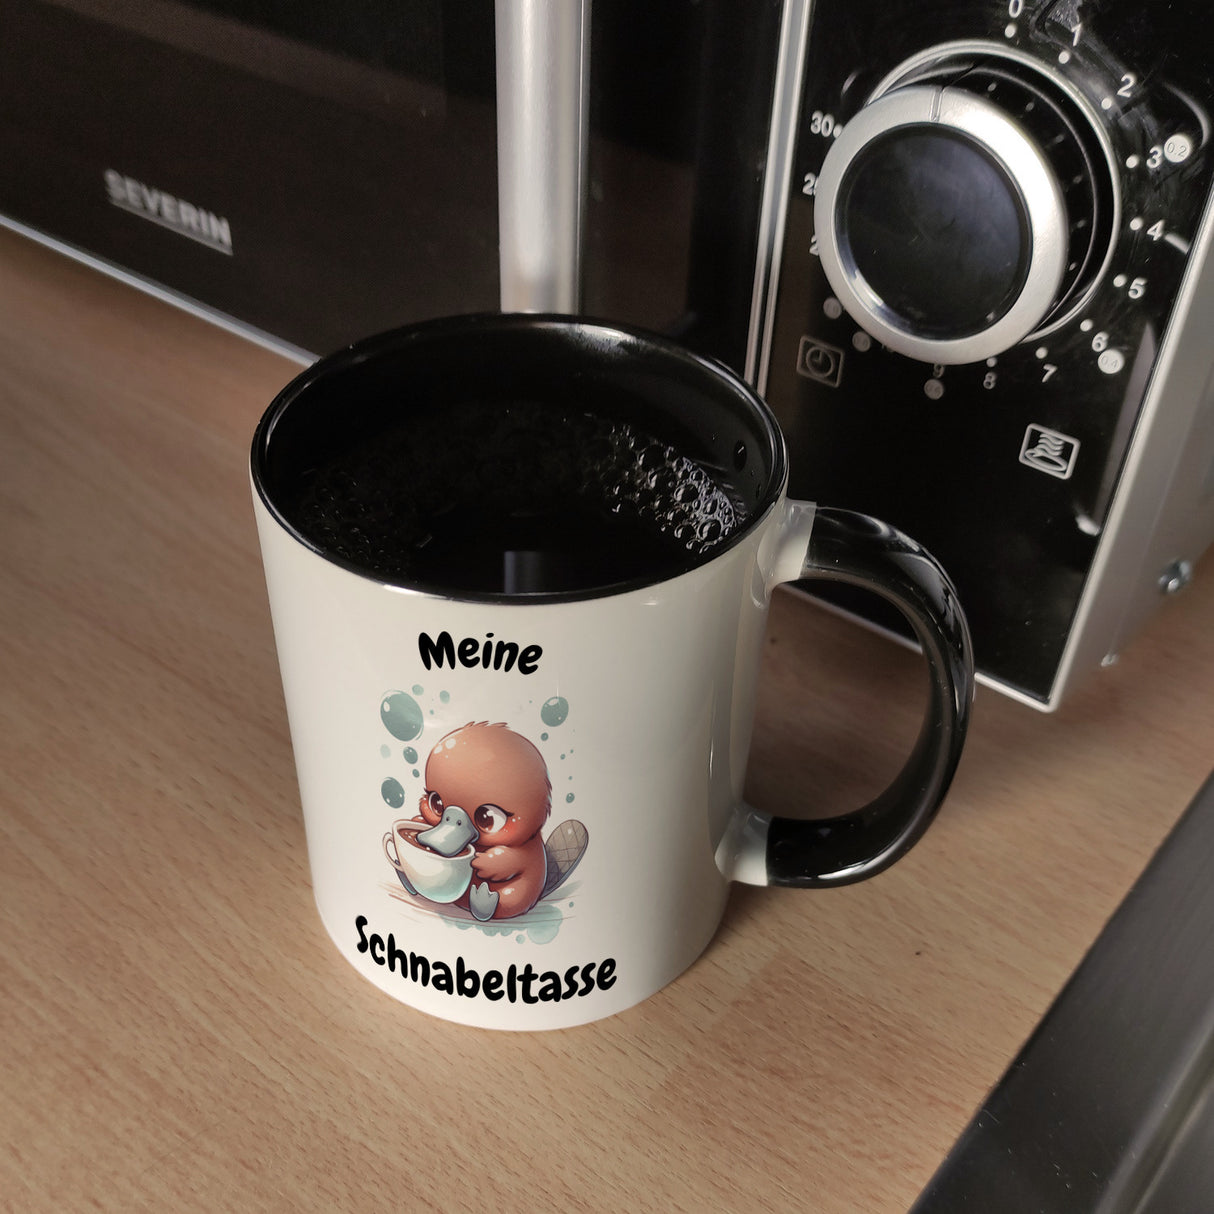 Schnabeltasse Schnabeltier Kaffeebecher mit Spruch Meine Schnabeltasse